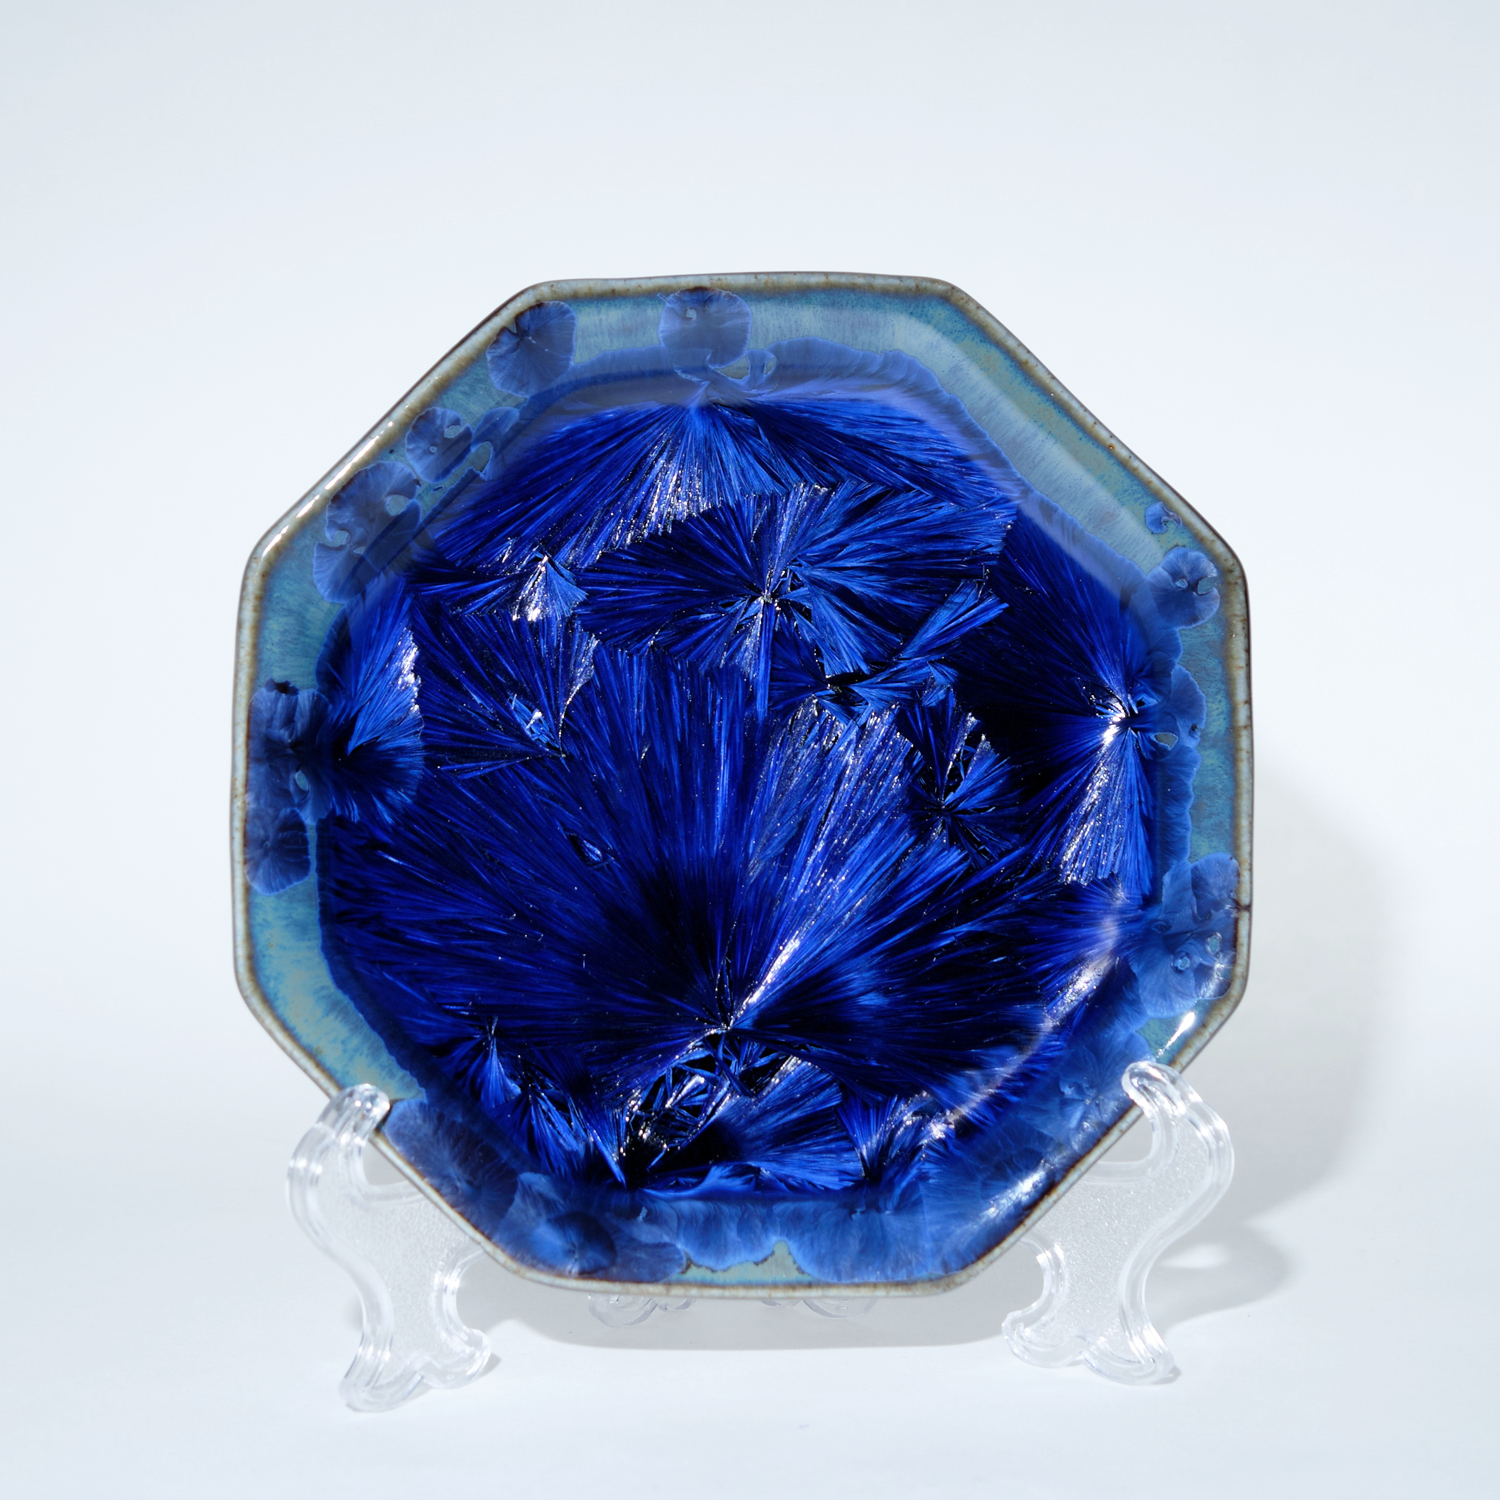 Yumiko Katsuya: Small Blue Octagonal Plate Product Image 1 of 1